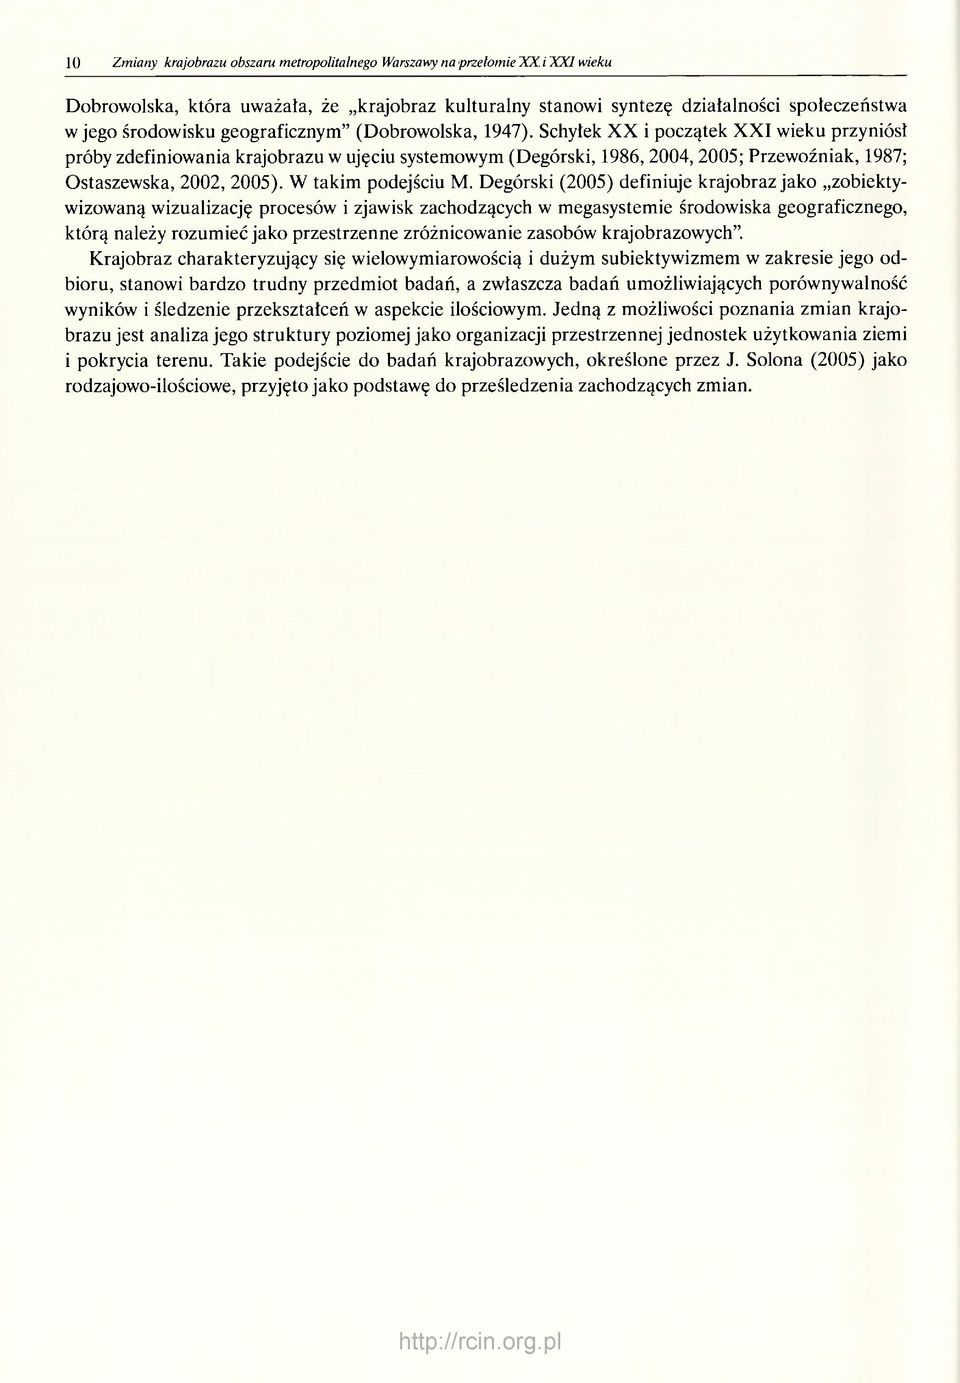 Schyłek XX i początek XXI wieku przyniósł próby zdefiniowania krajobrazu w ujęciu systemowym (Degórski, 1986, 2004, 2005; Przewoźniak, 1987; Ostaszewska, 2002, 2005). W takim podejściu M.